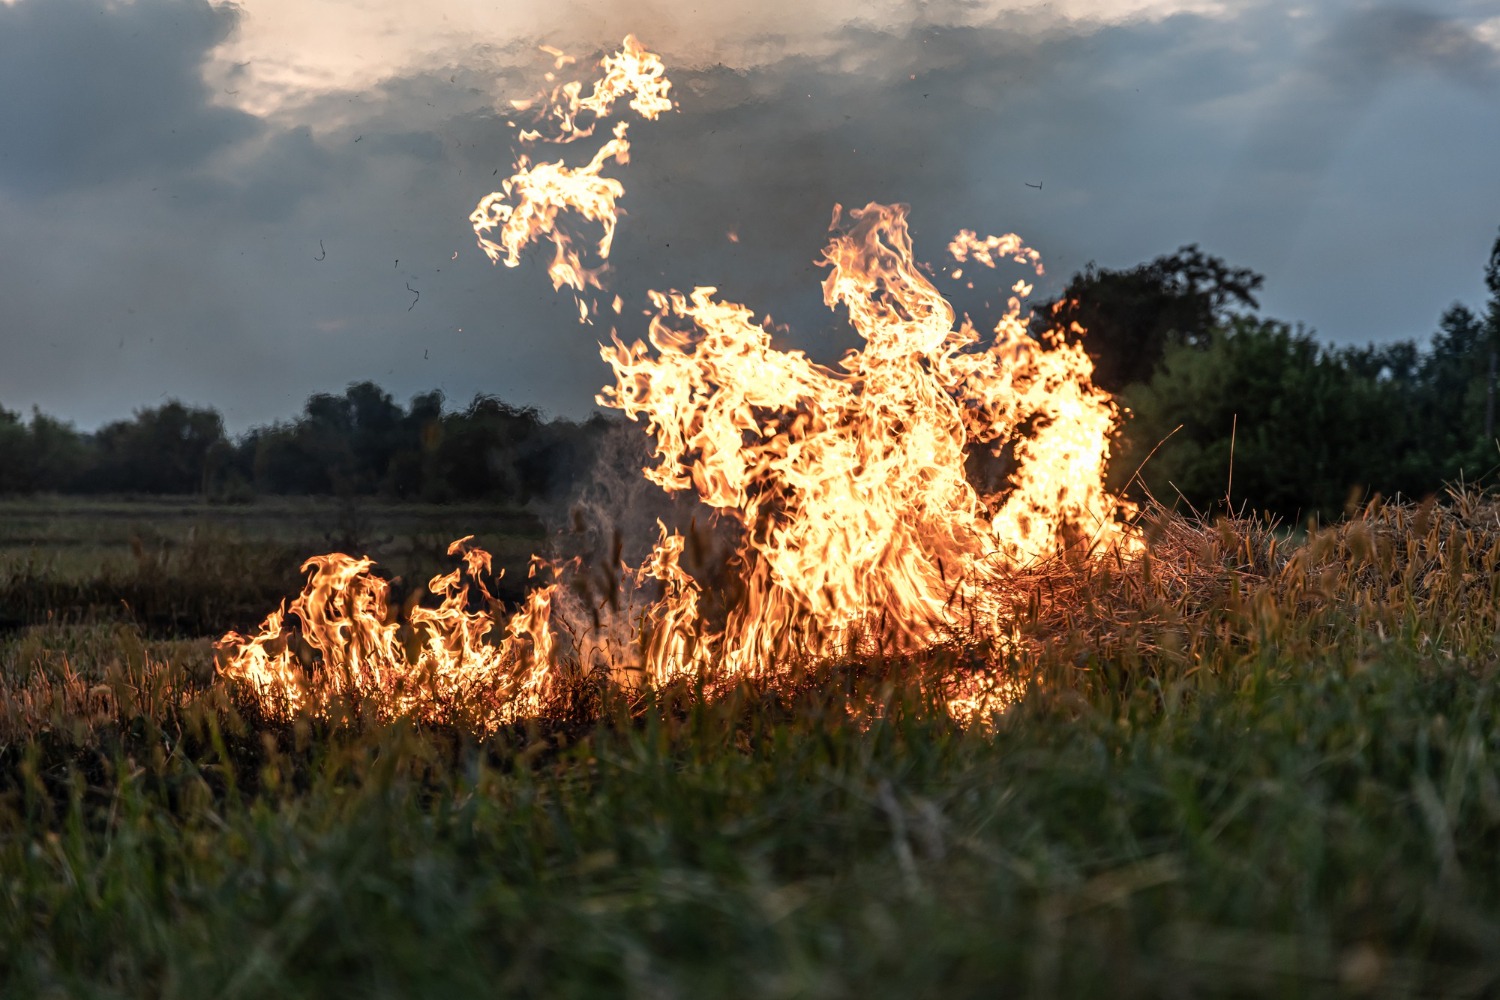 Incendiu într-un lan de grâu